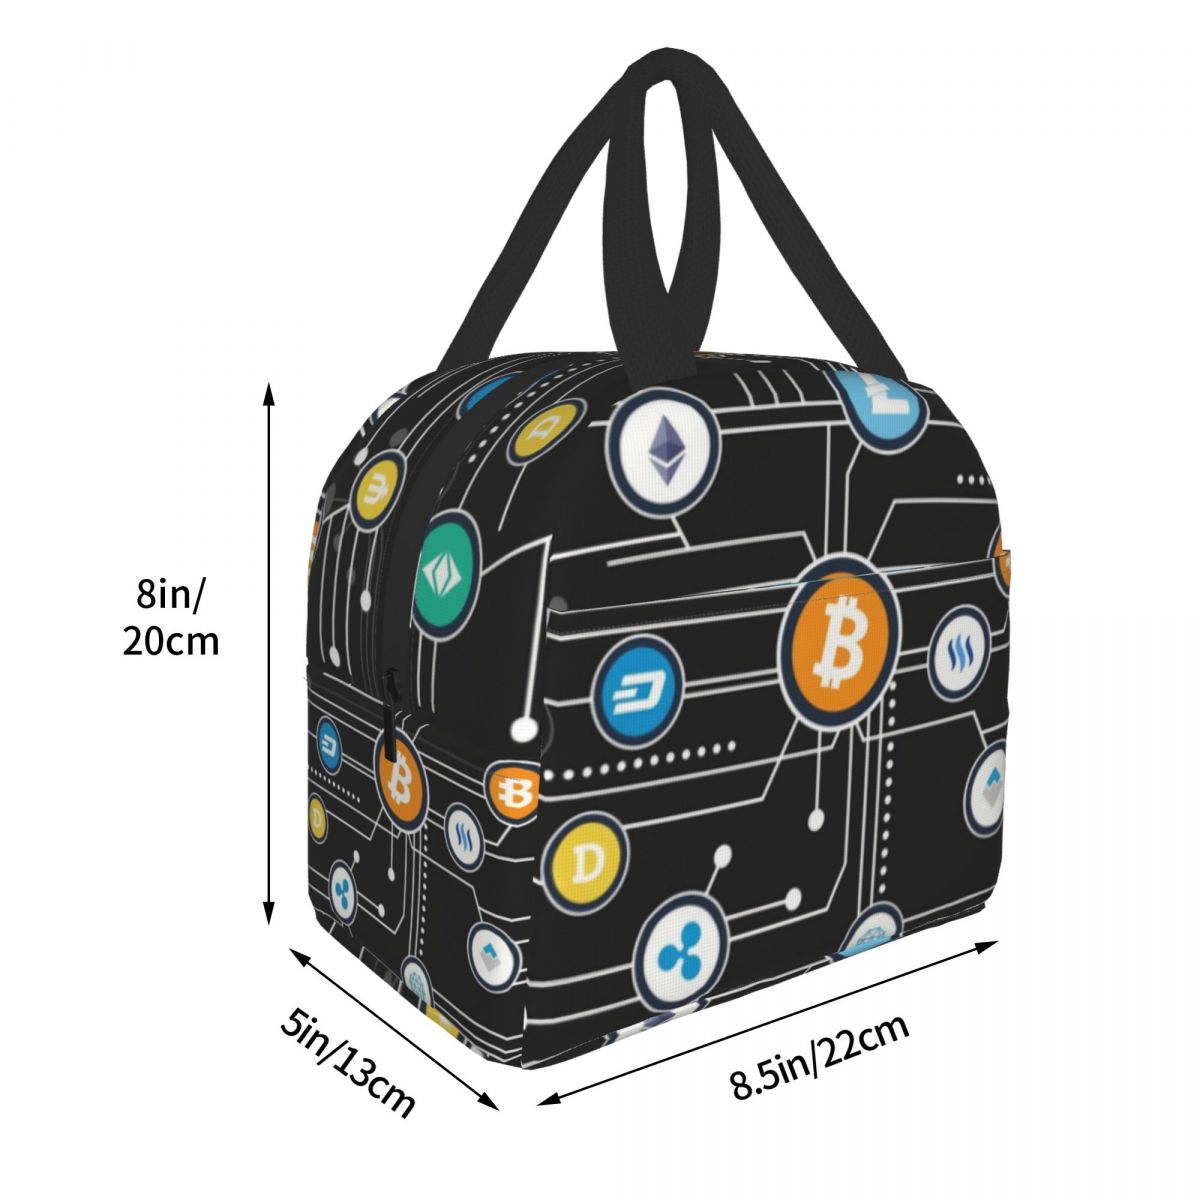 Kryptowährung Bitcoin Altcoin Lunch Bag,